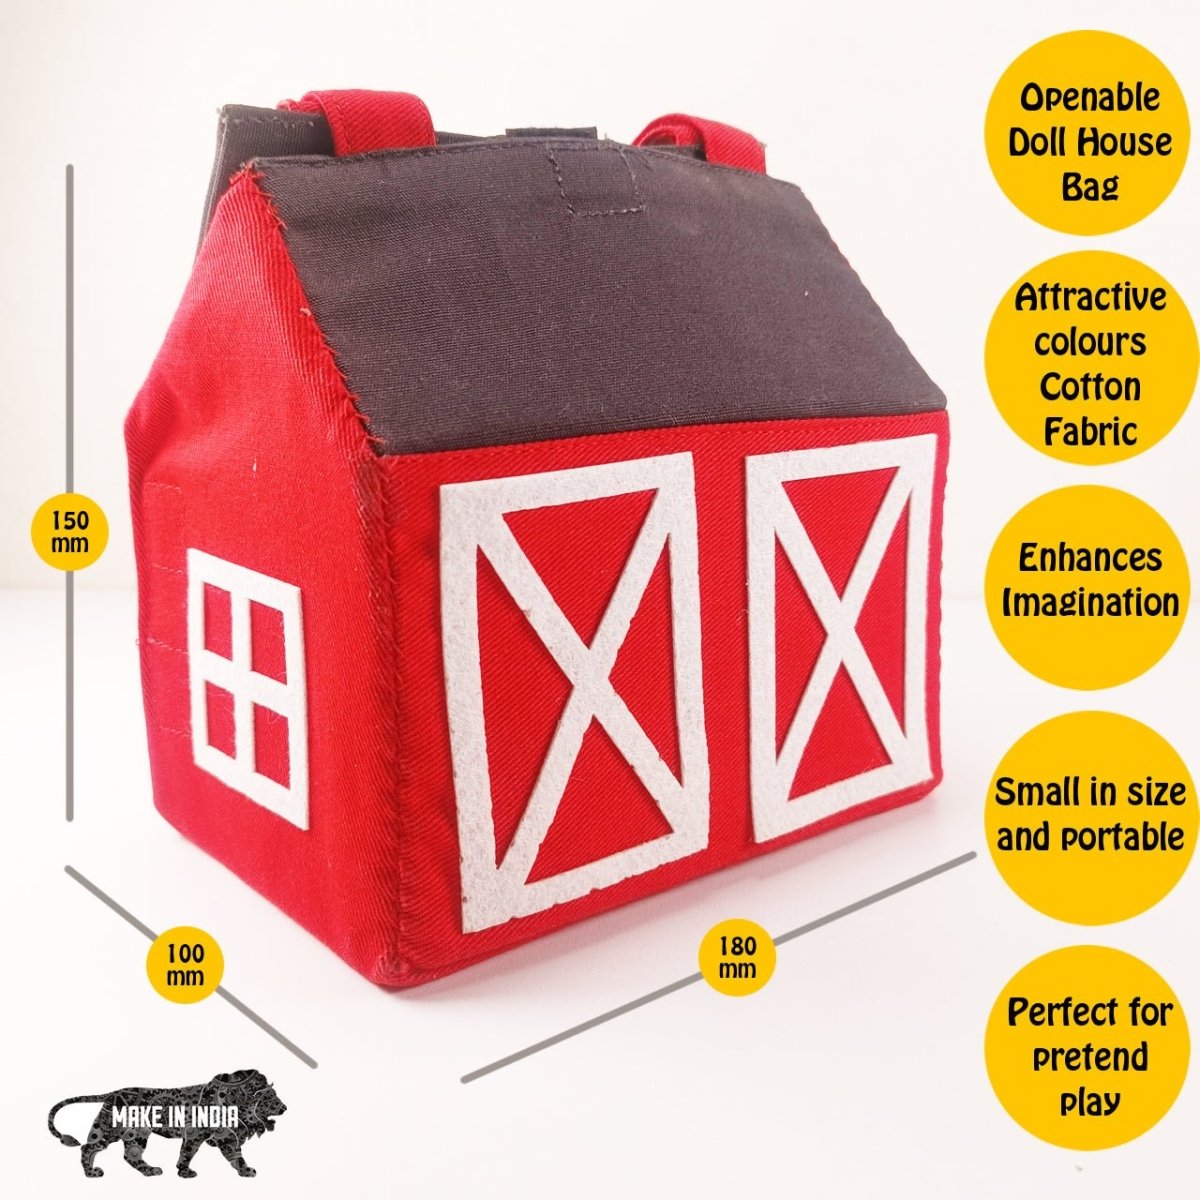 CuddlyCoo Fabric Doll House- House, Barn, Train Station, Garage - CCDOLLHOUSEBAG4